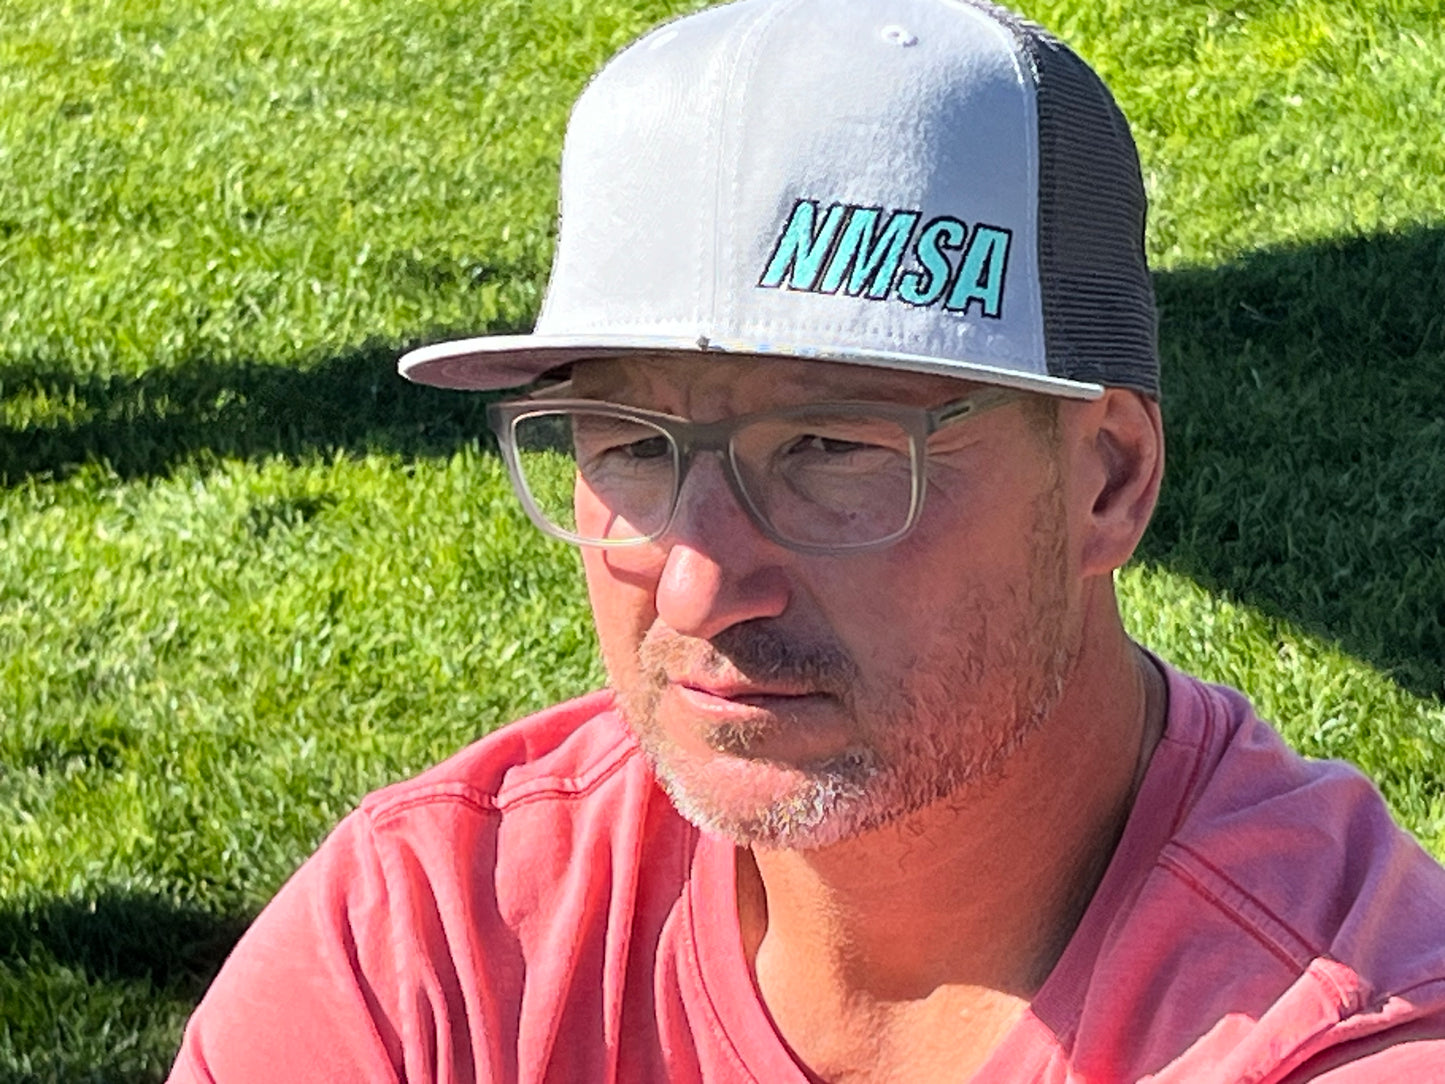 NMSA New Era Flat Bill Trucker Hat